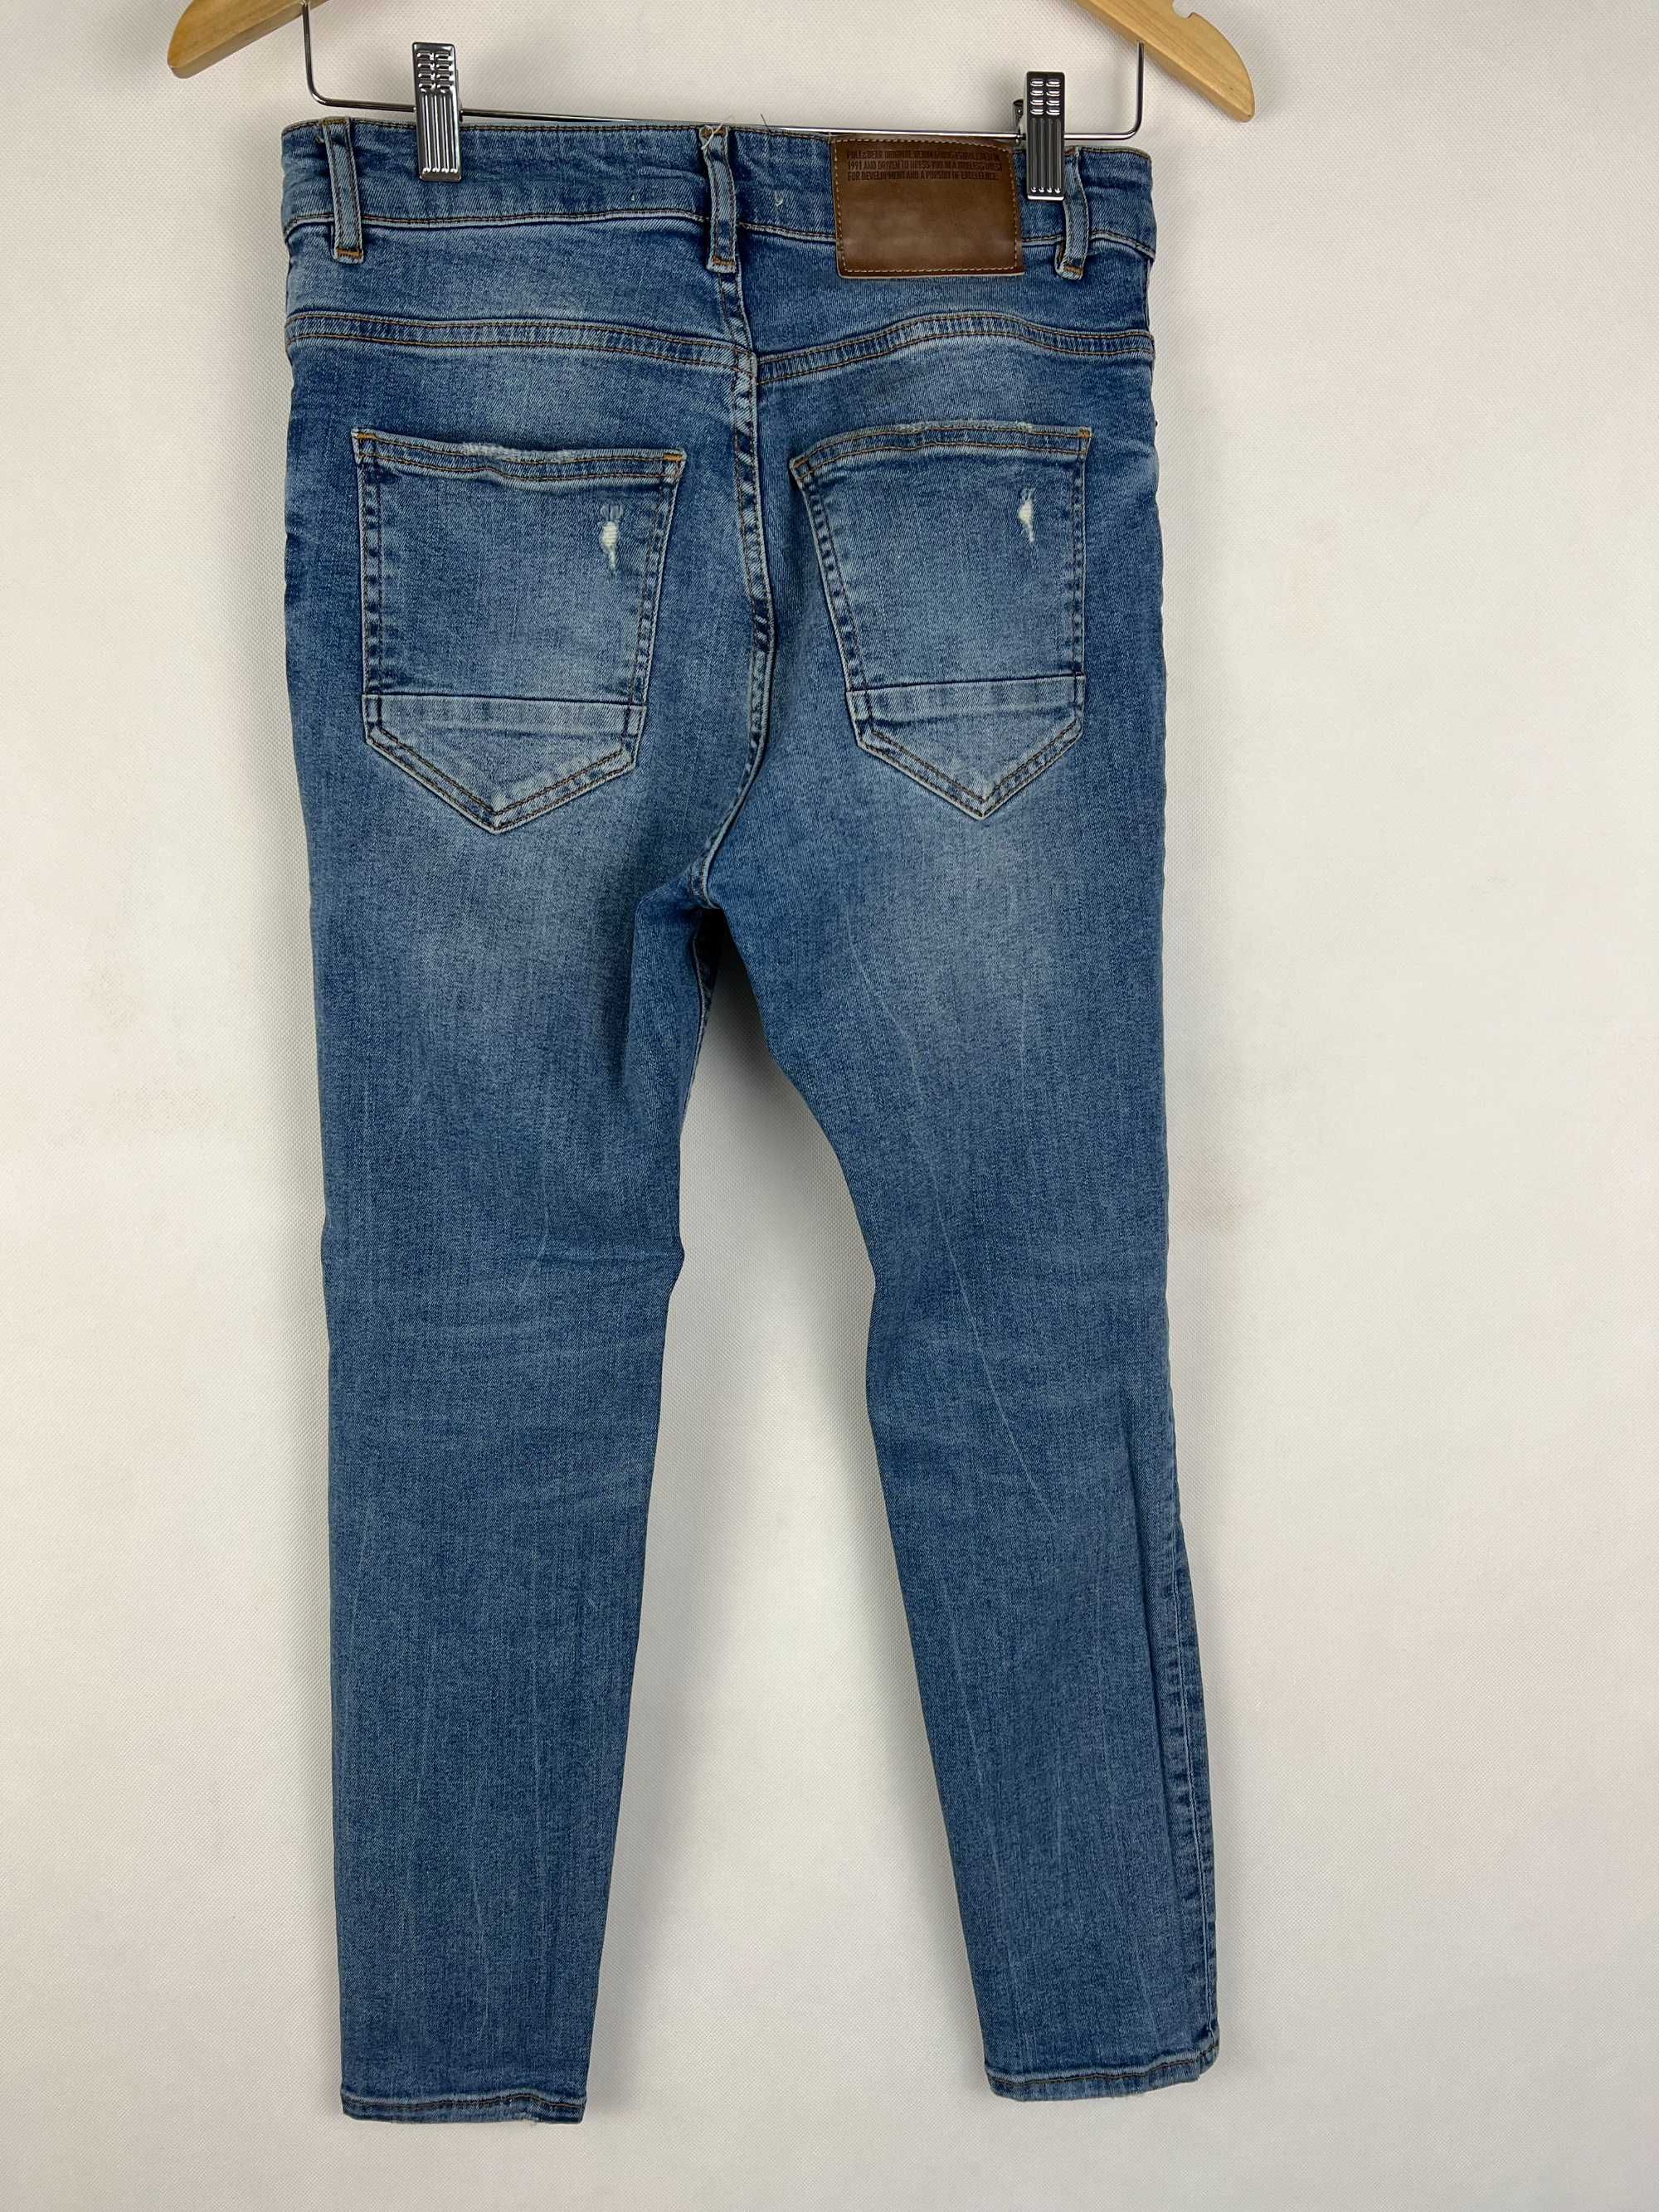 Jeansy spodnie jeans z przetarciami 38 XS męskie Pull & bear carrot